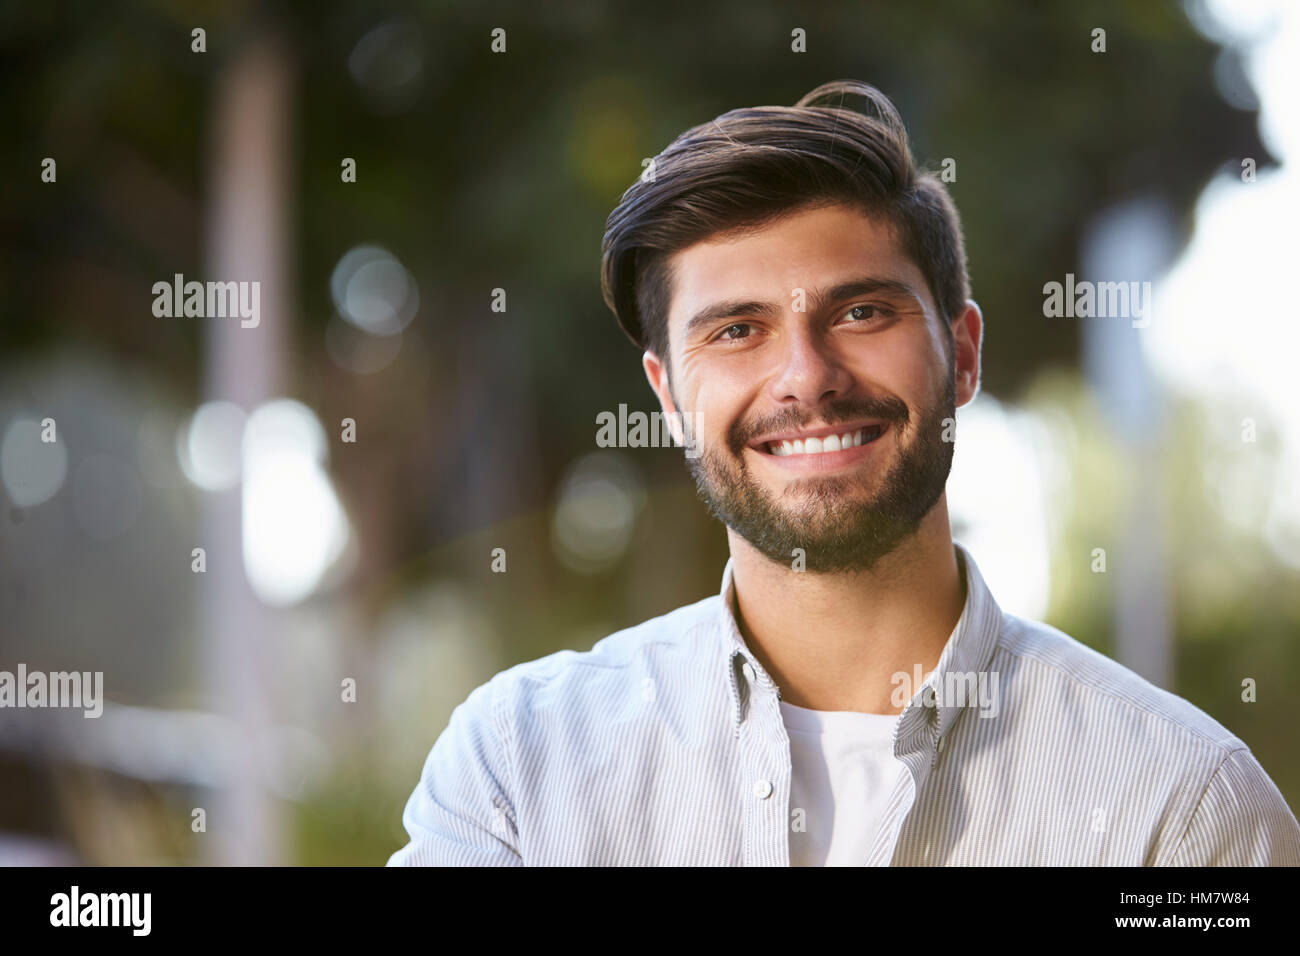 Sonriente joven barbudo sentado afuera, Retrato Foto de stock